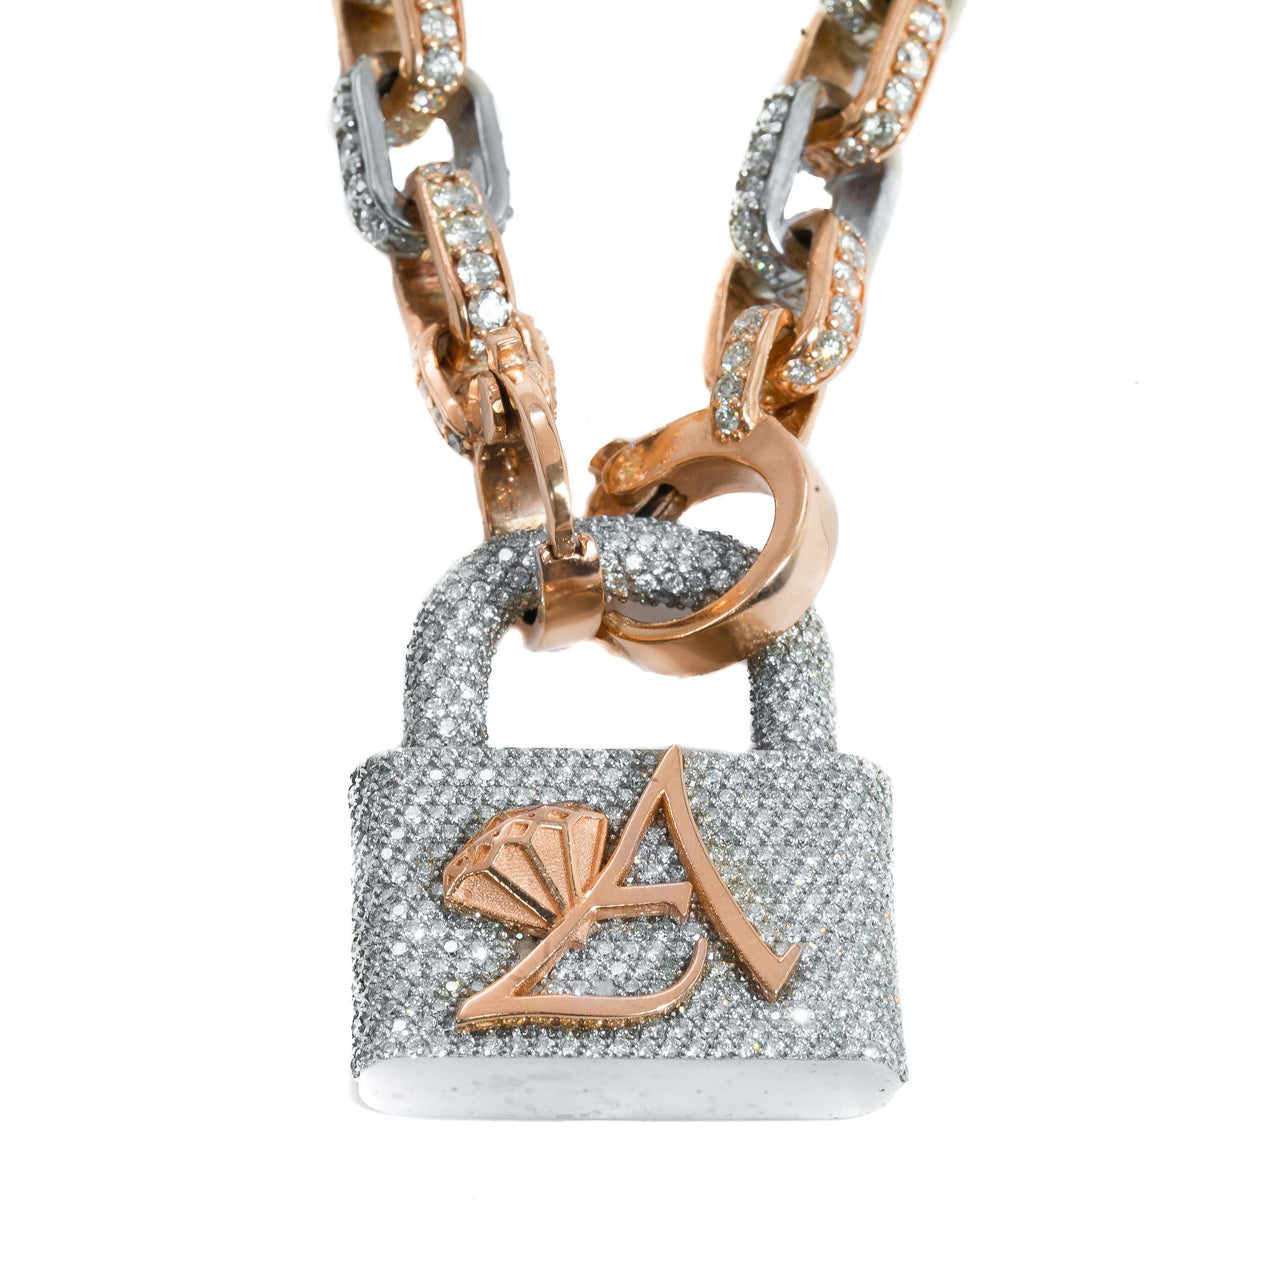 Louis Vuitton Set Lock Cuban Chain Necklace with Key Bracelet